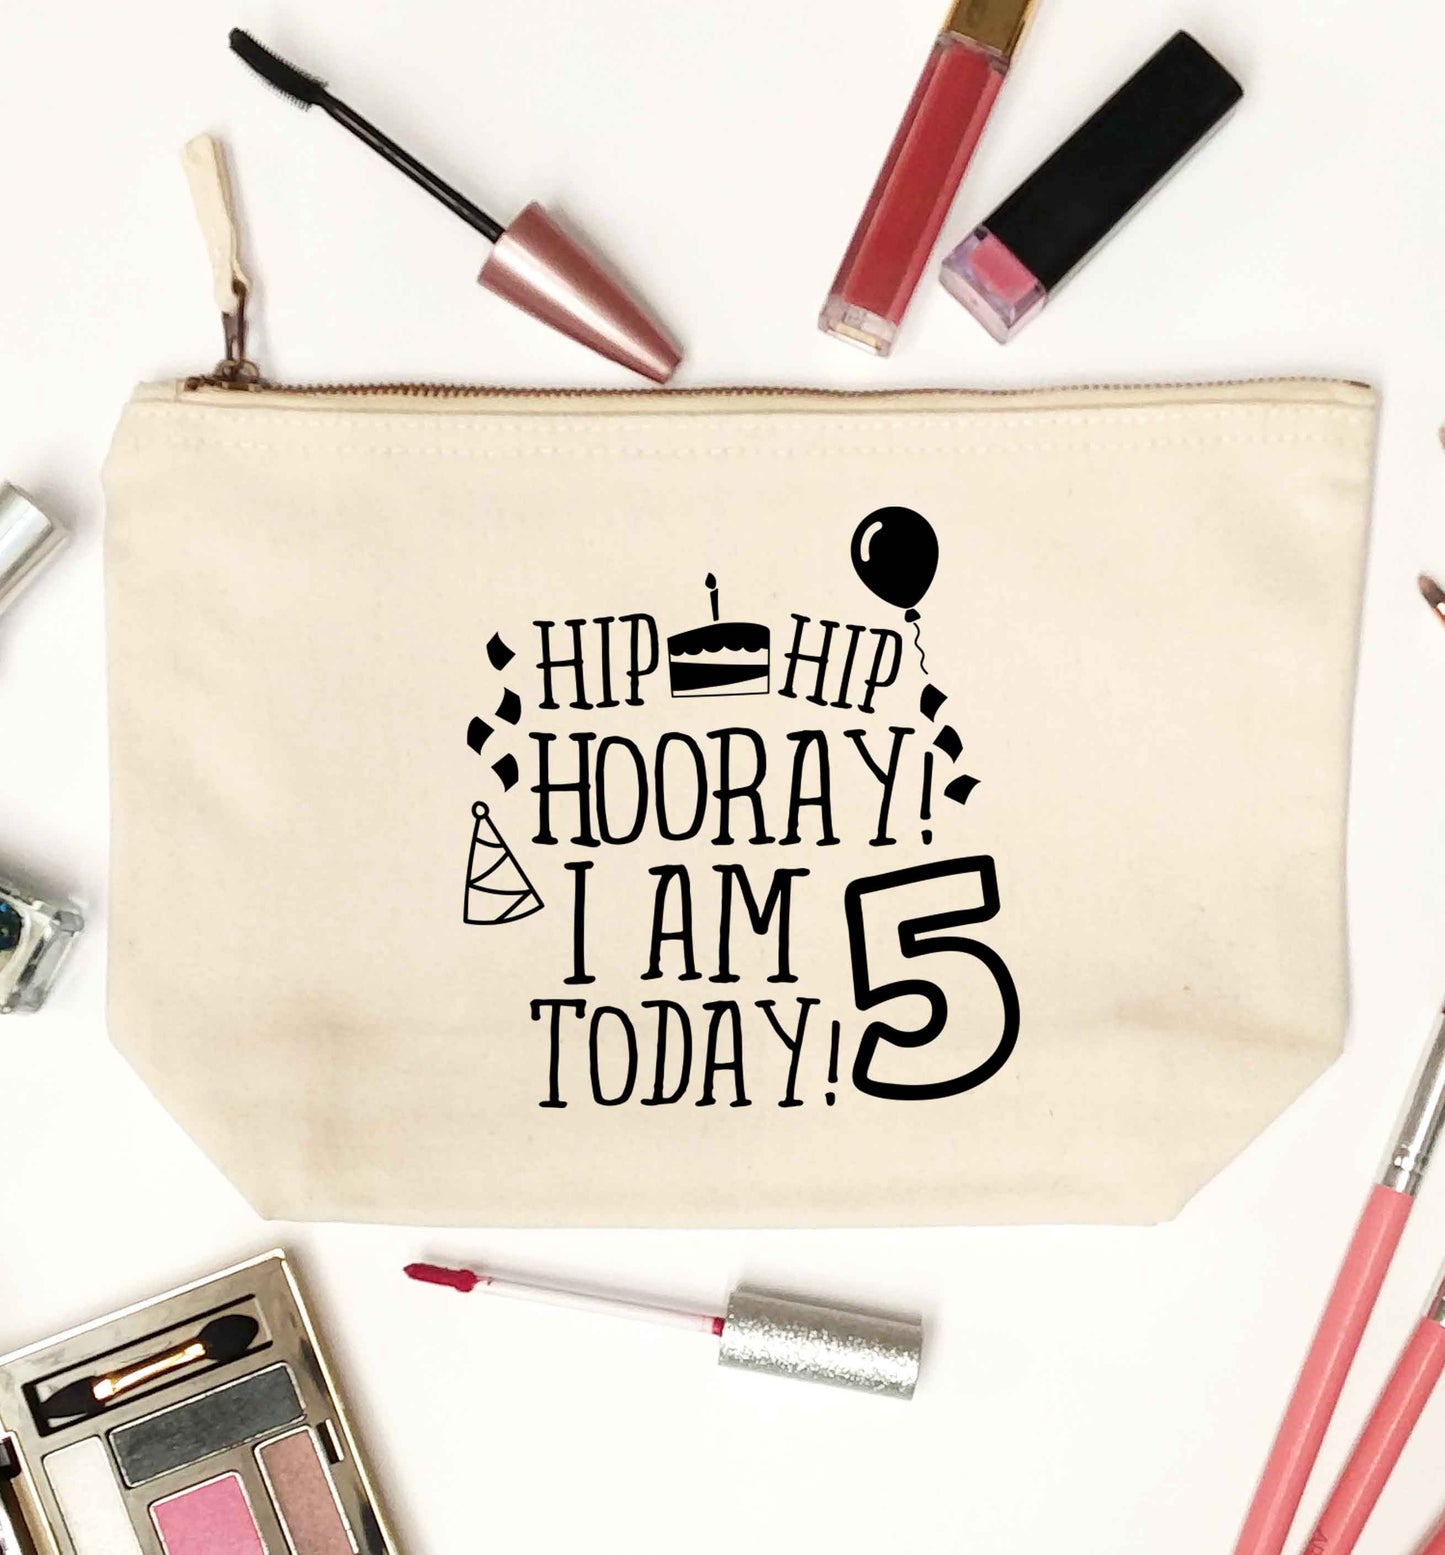 Hip hip hooray I am five today! natural makeup bag